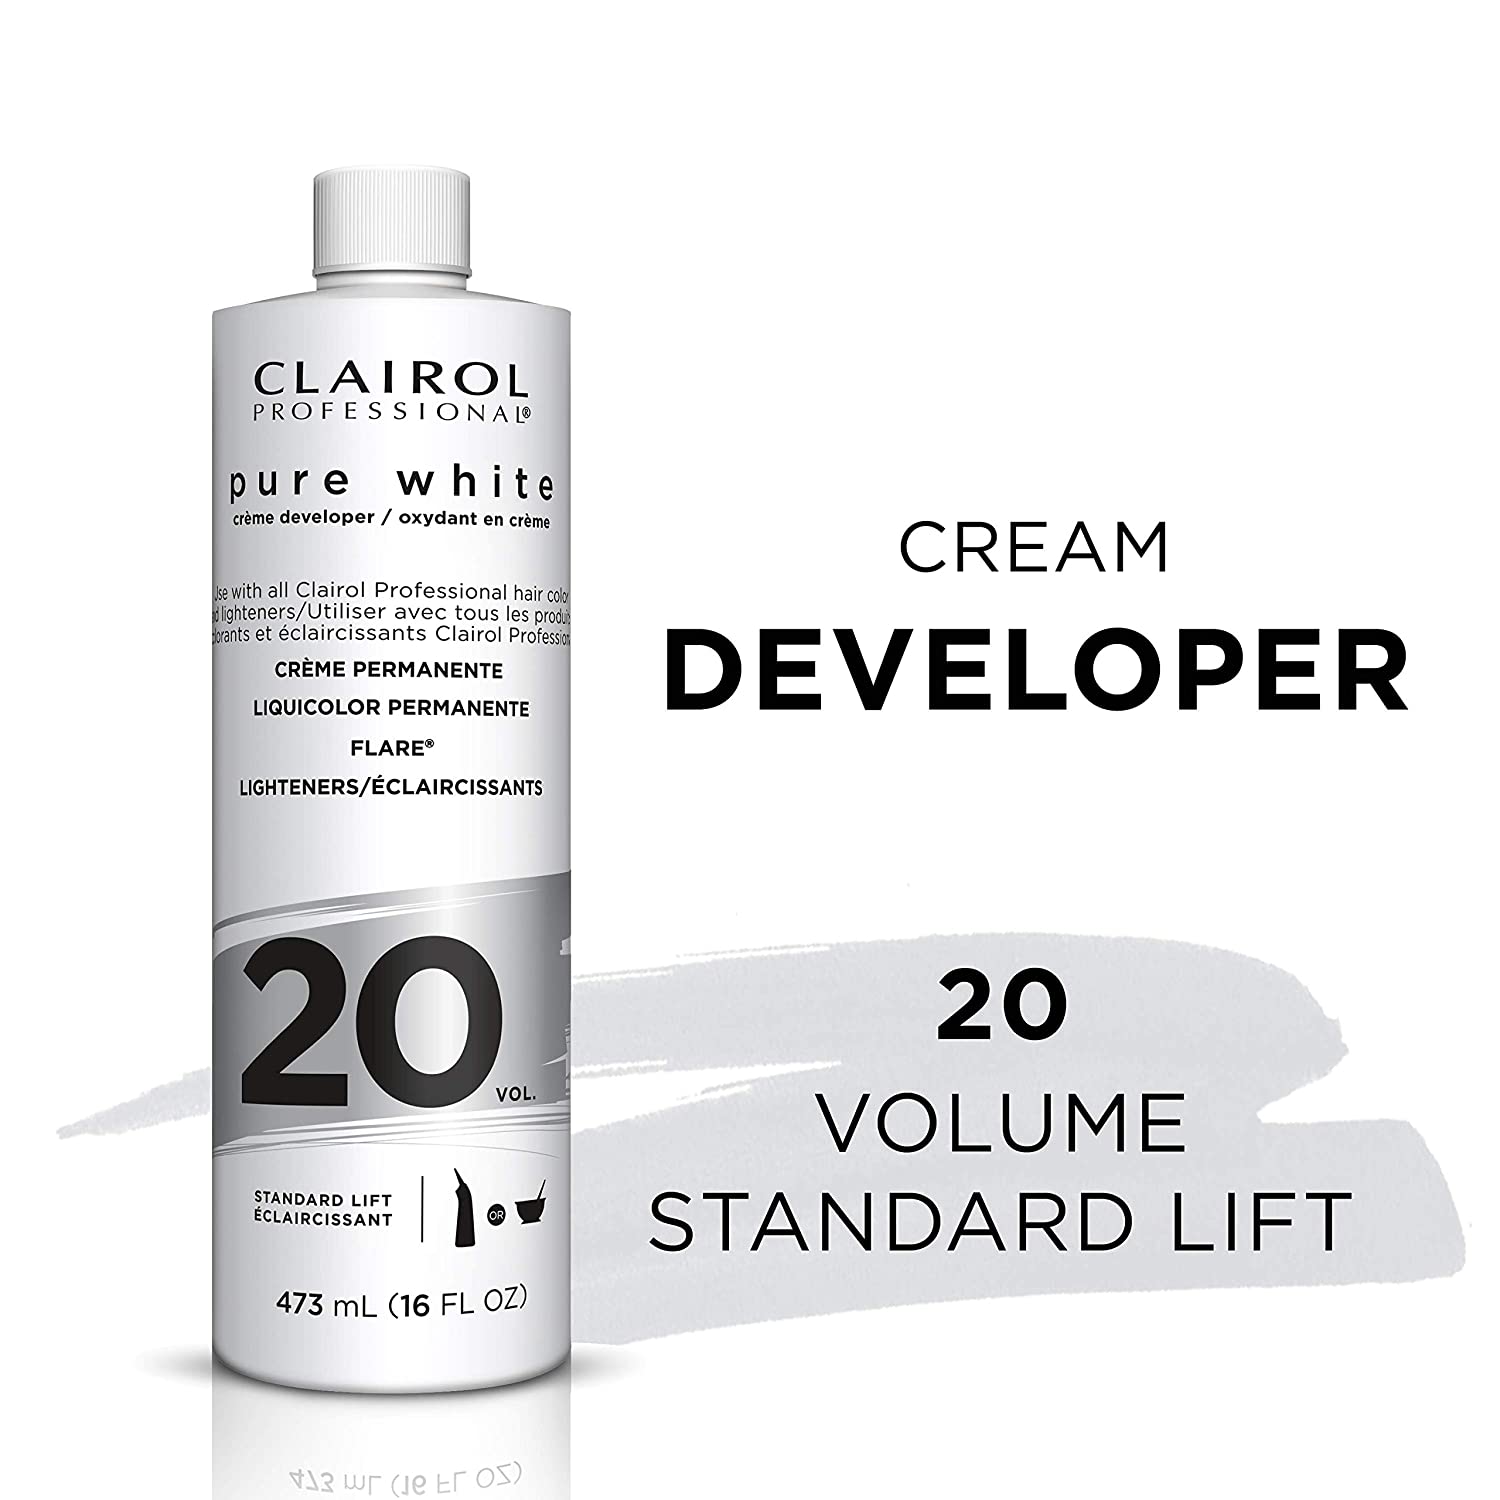 Clairol Professional Pure White 20vol Crème Developer